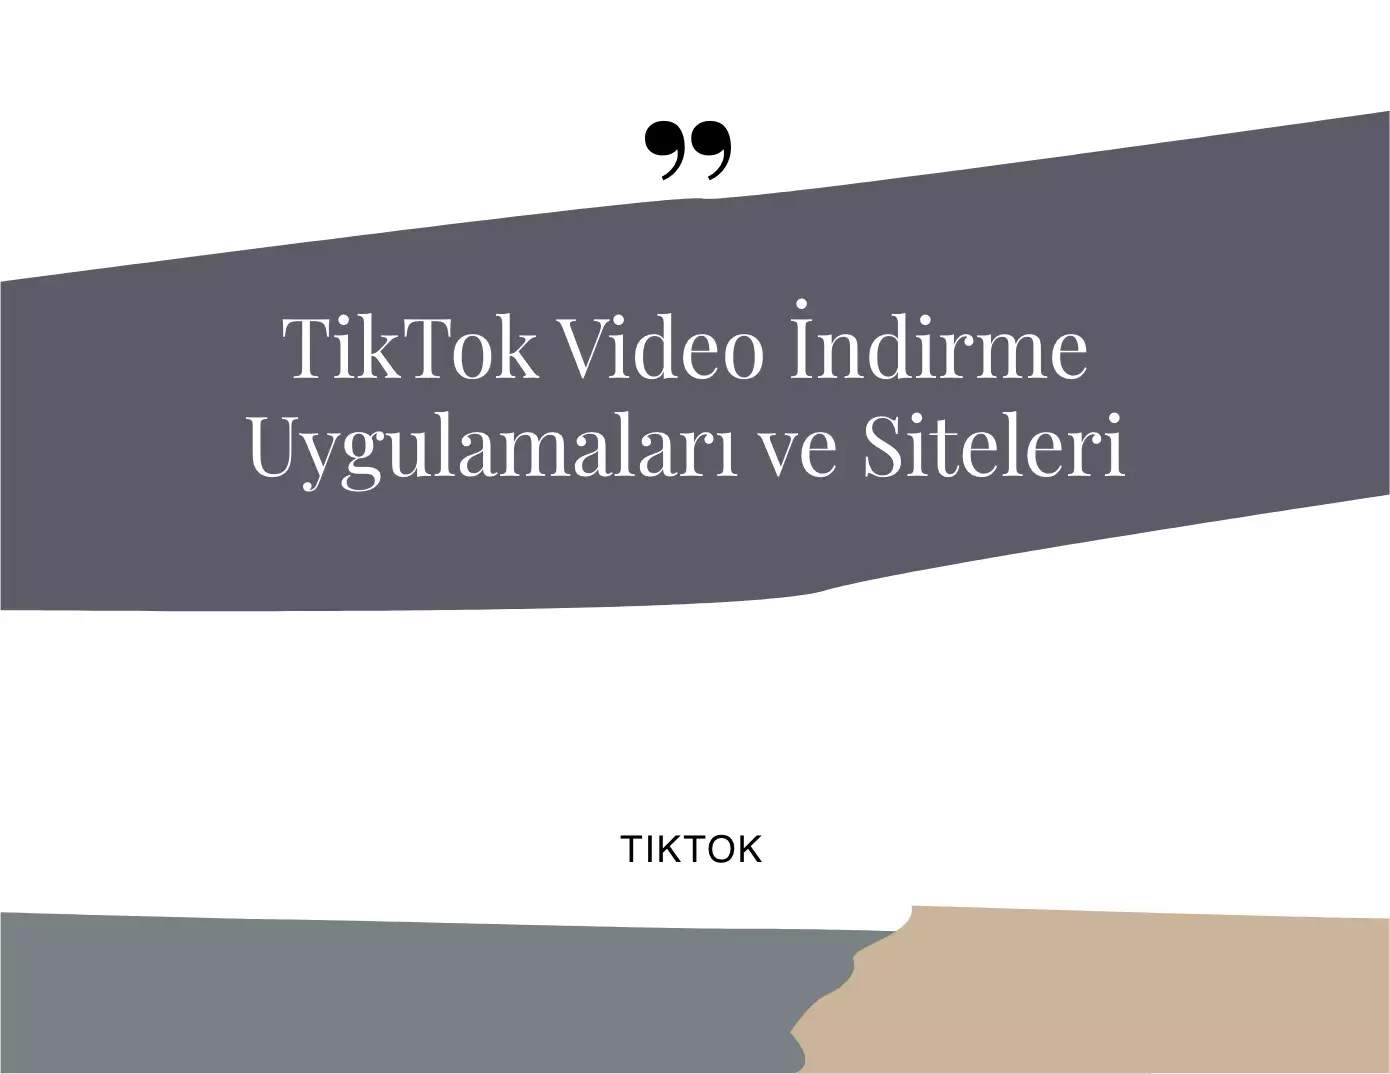 TikTok Video İndirme Uygulamaları ve Siteleri